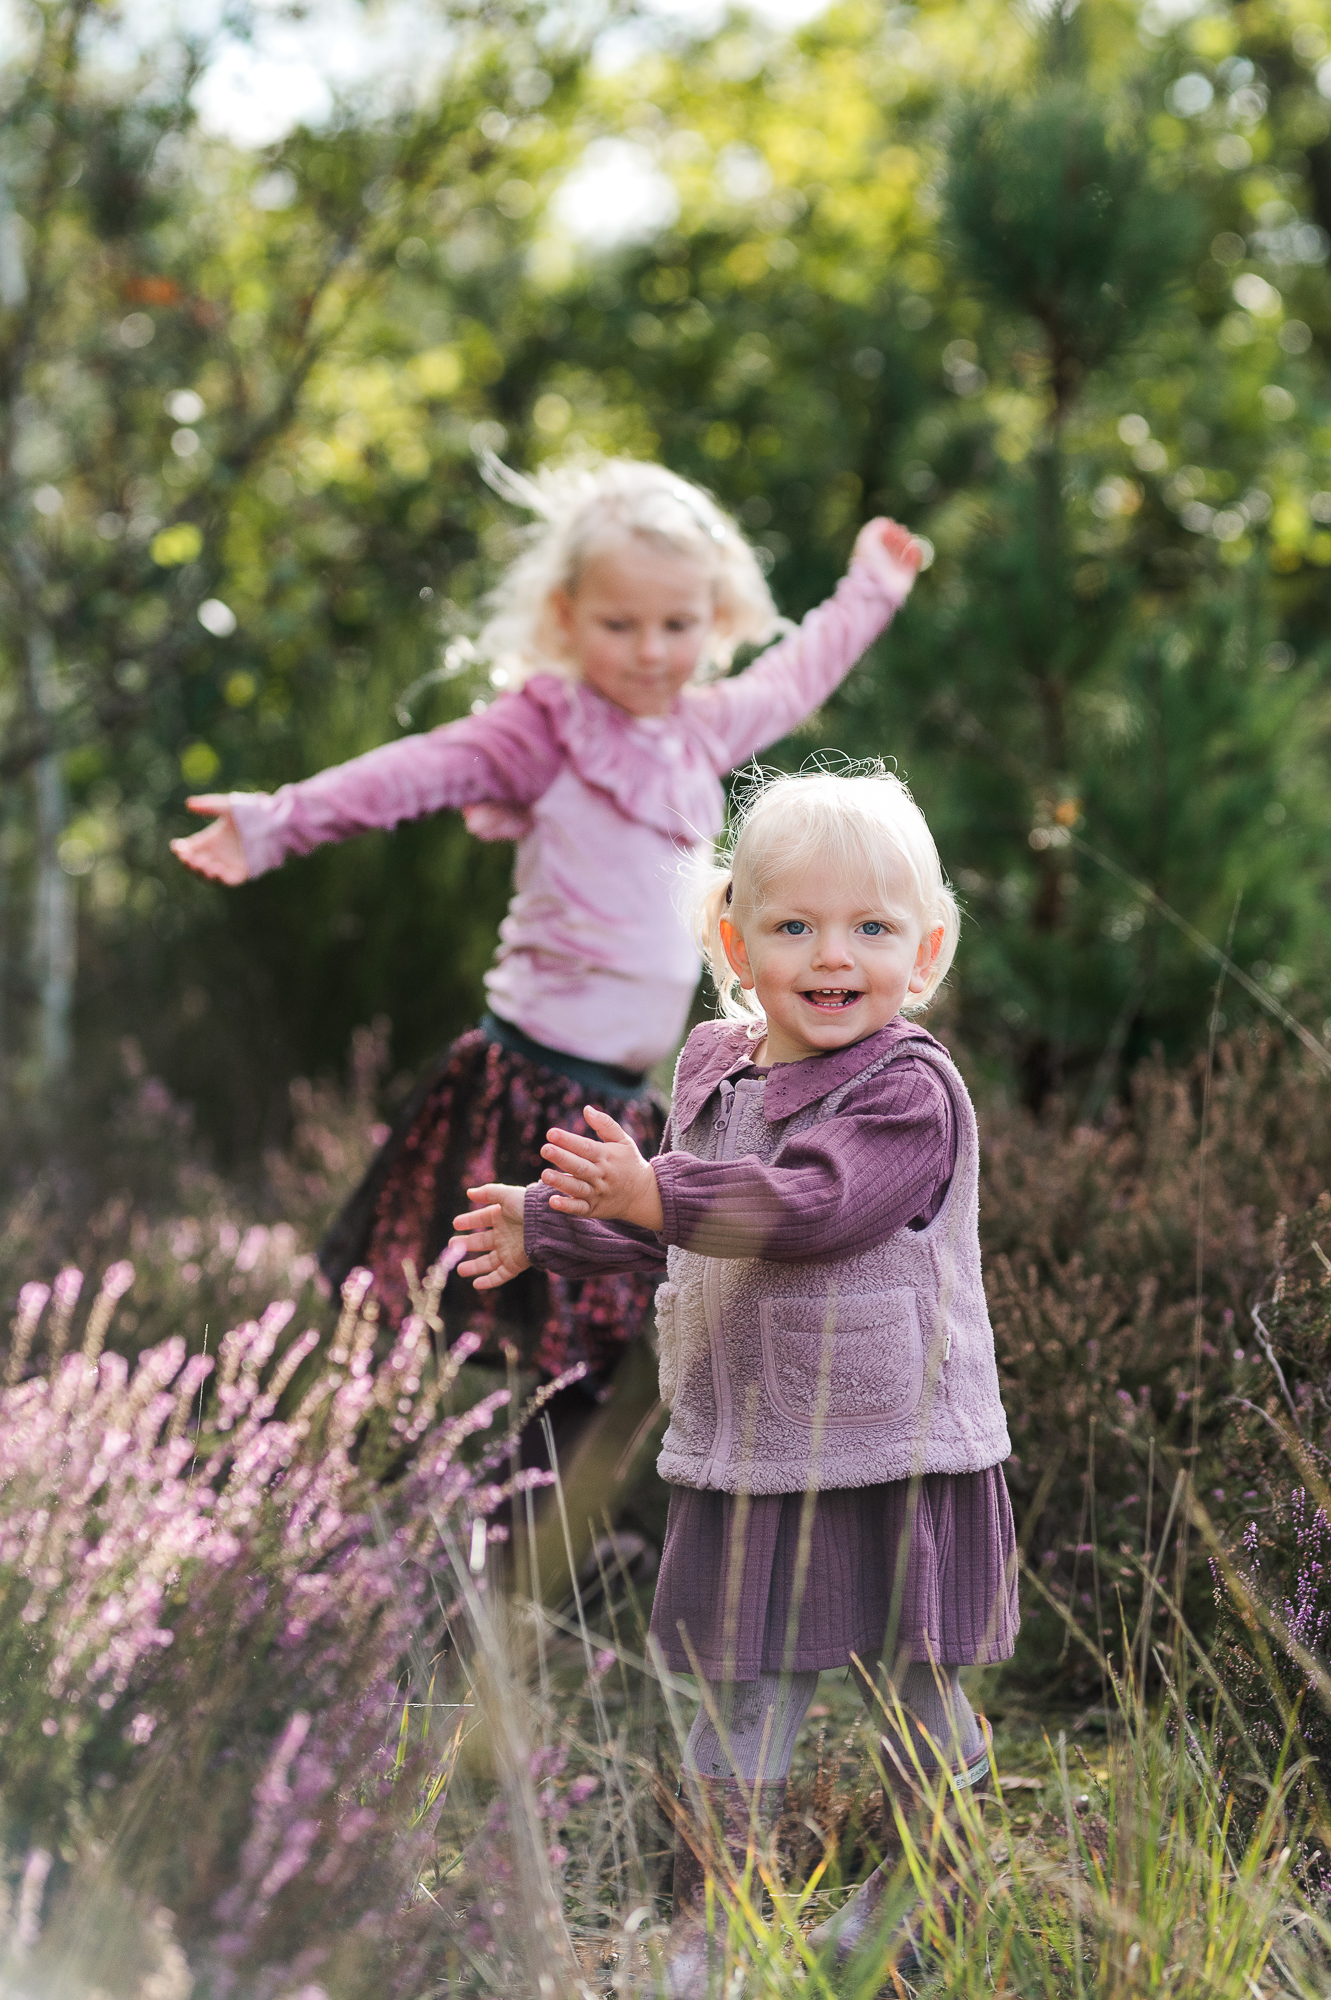 Twee zusjes in paars gekleed die lachend spelen in de natuur.